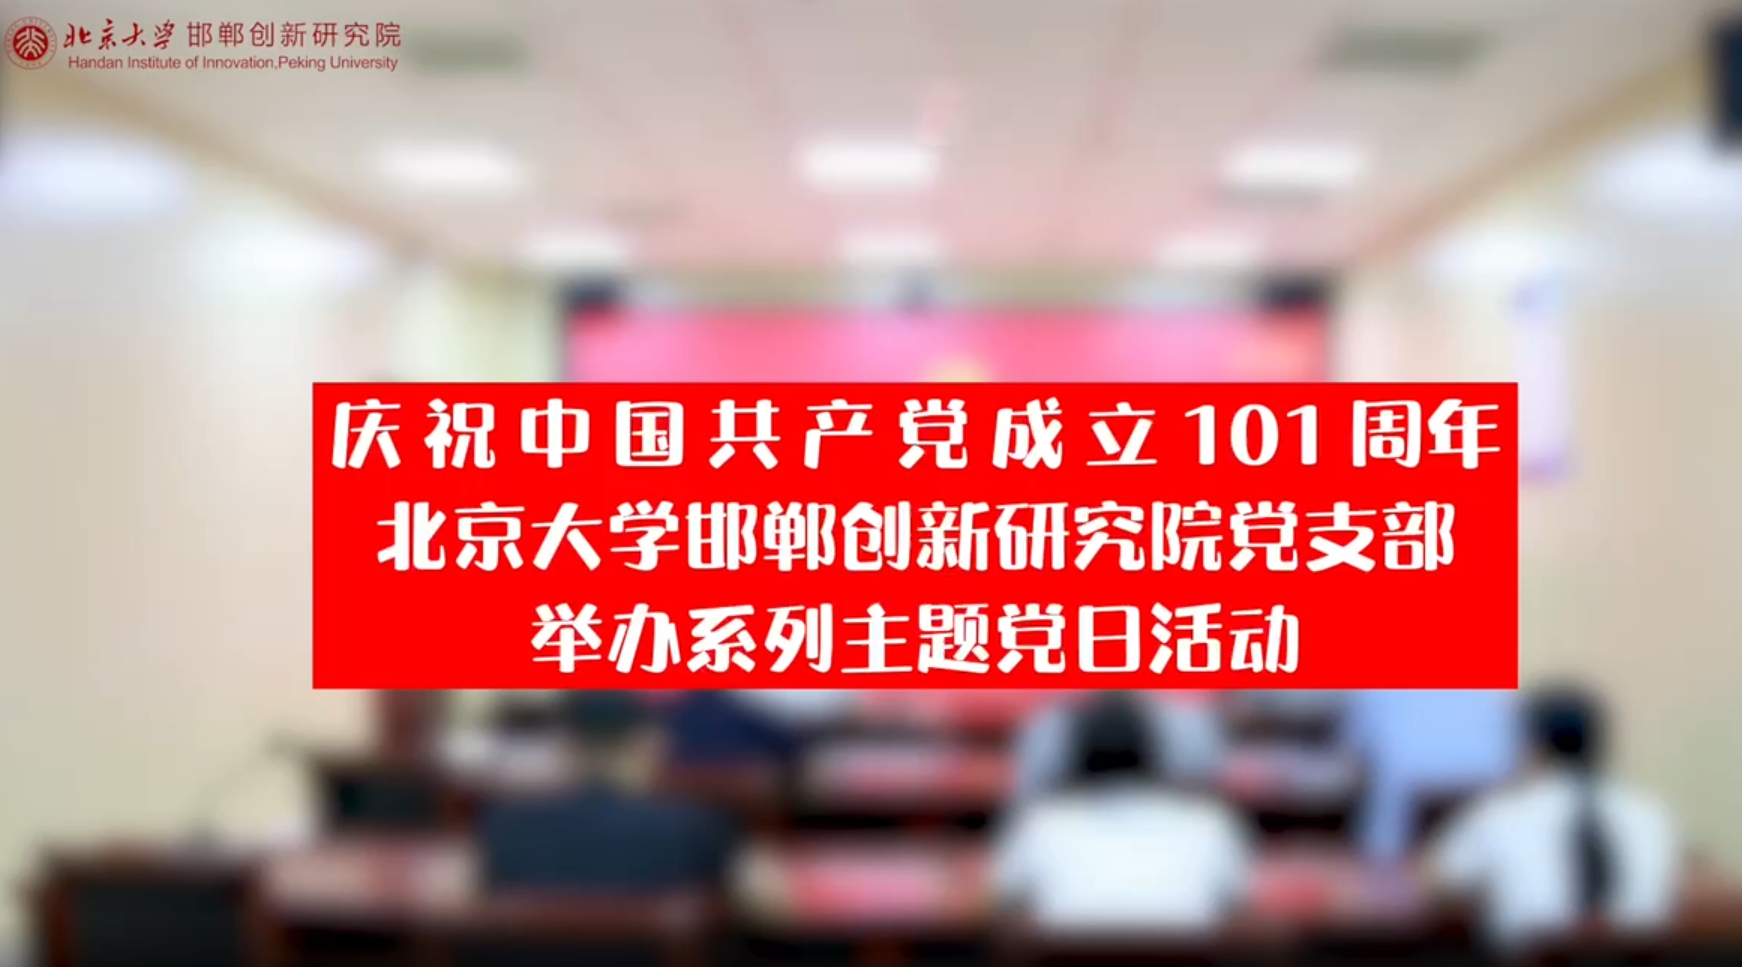 北京大学邯郸创新研究院党支部举办迎七一系列党日活动